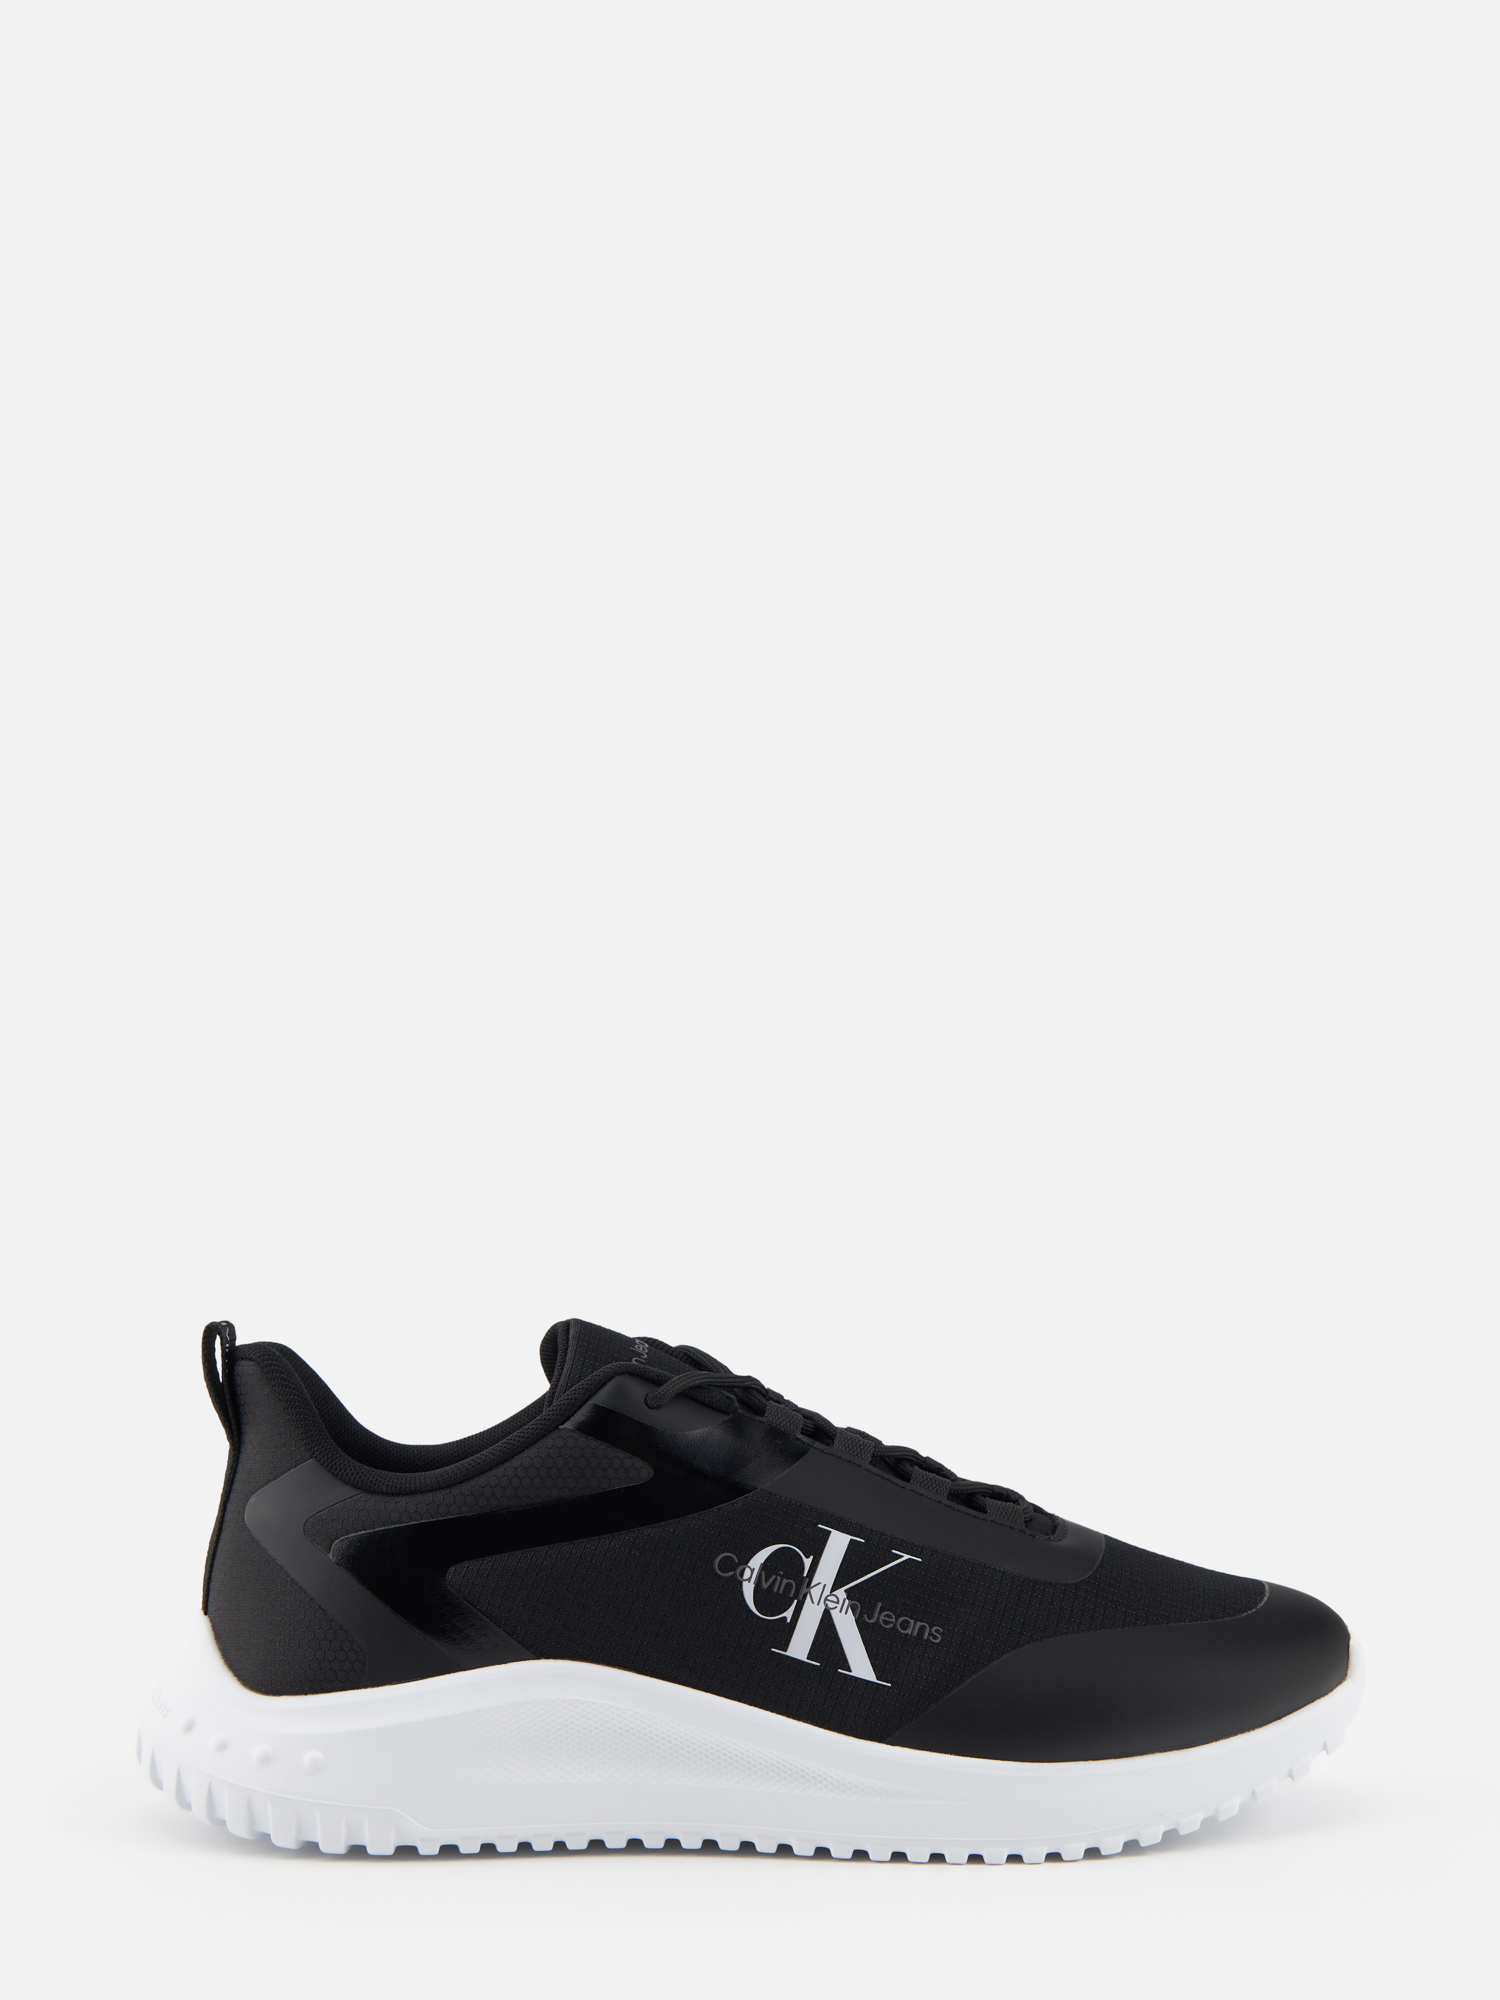 Кроссовки мужские Calvin Klein YM0YM00968 черные 40 RU